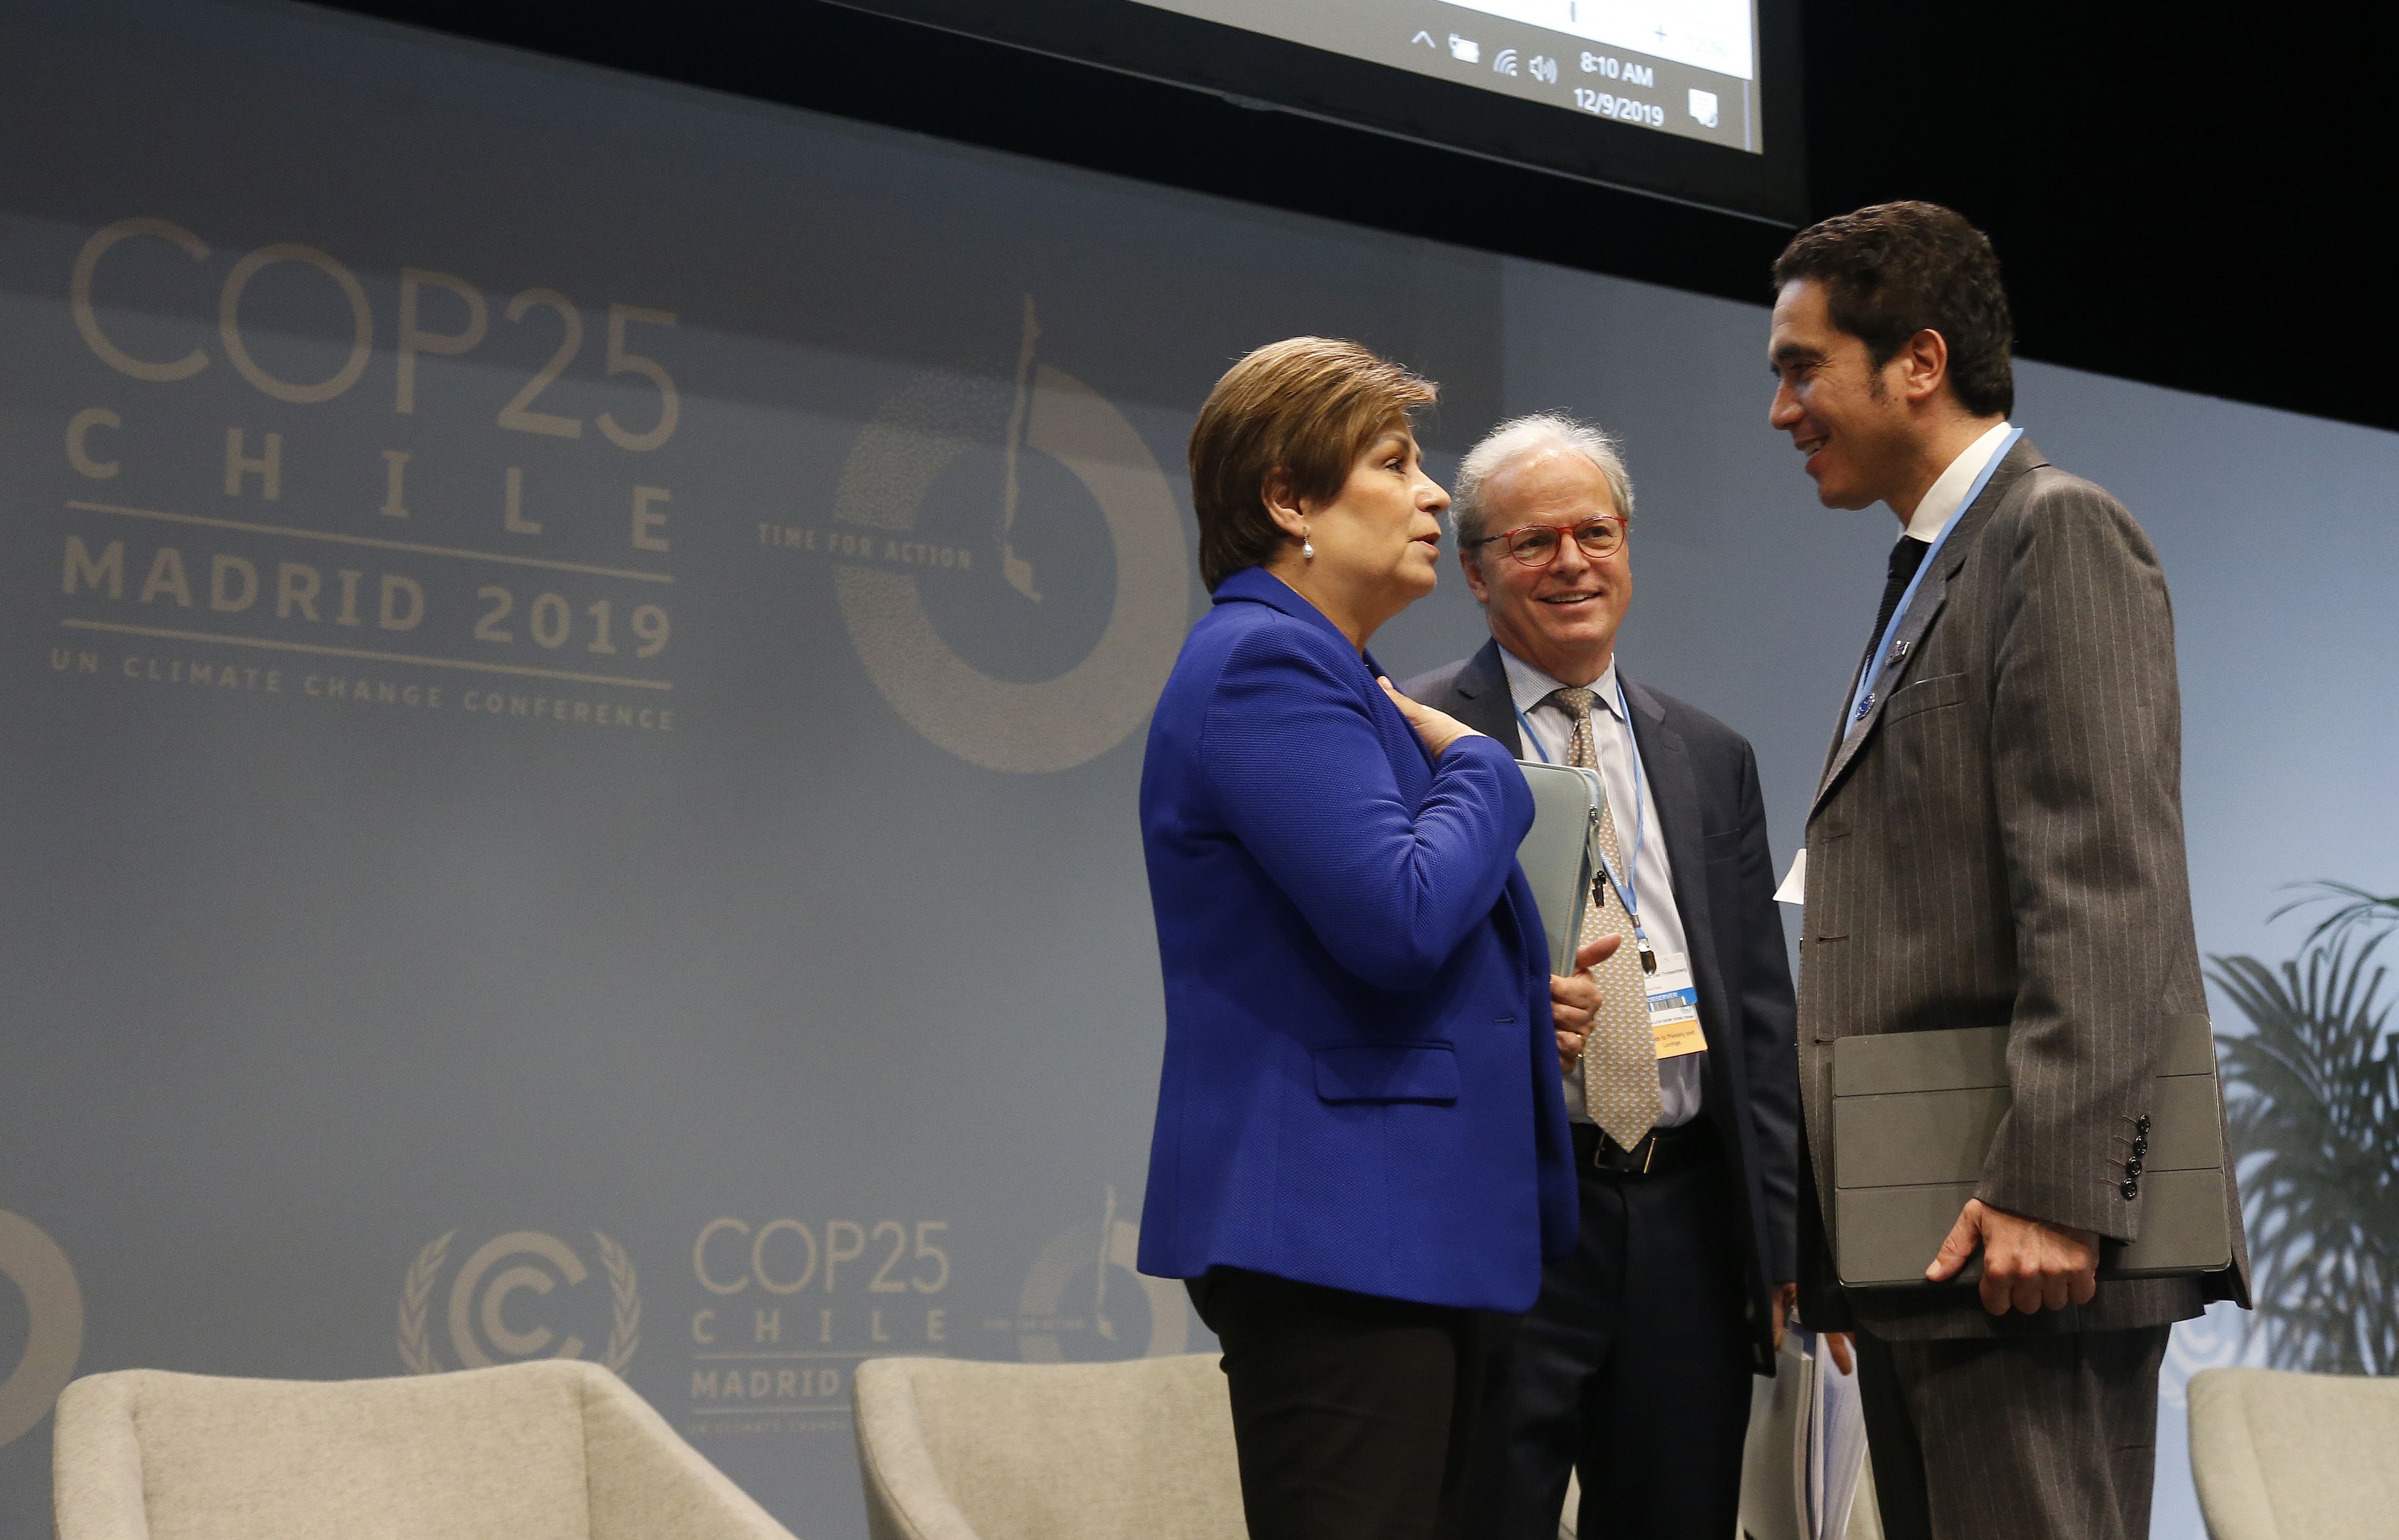 Patricia Espinosa, secretaria ejectuvida de UNFCCC, con Ignacio Briones, ministro de Finanzas de Chile y Mika Lintilä, ministro de Finanzas de Finlandia.